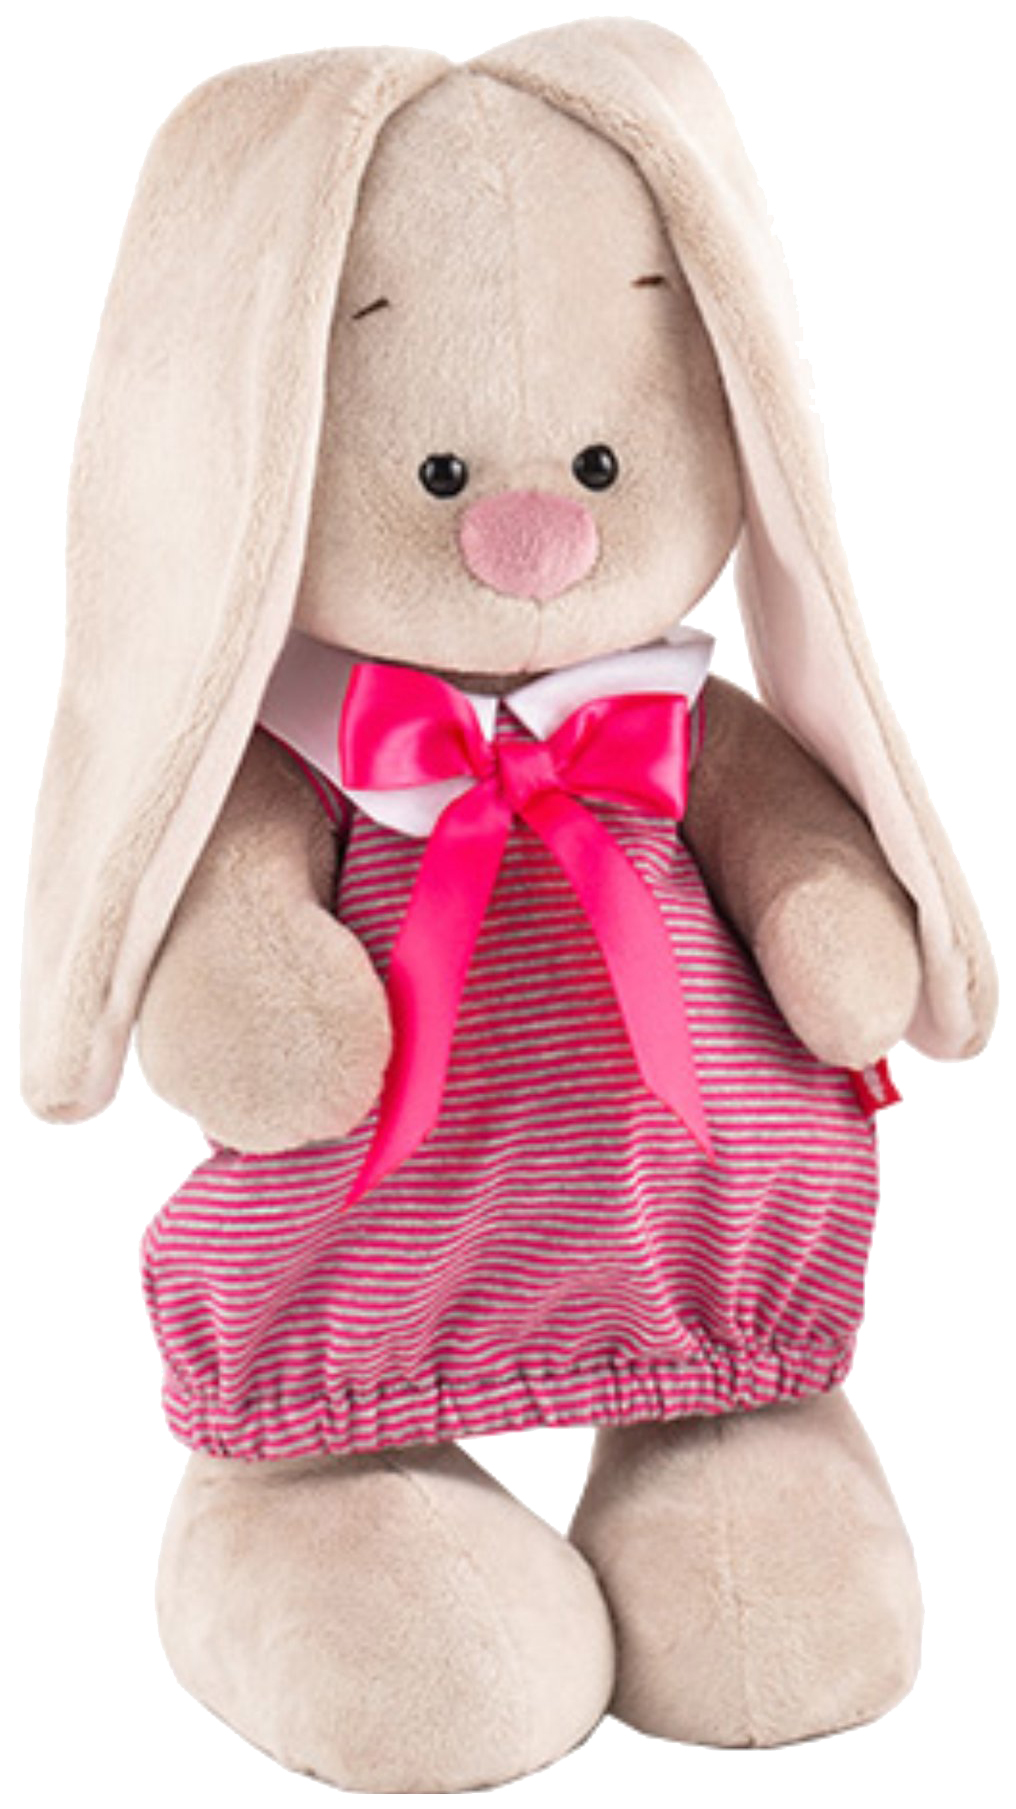 Мягкая игрушка BUDI BASA StS-257 Зайка Ми в платье в розовую полоску (малая) мягкая игрушка budi basa зайка ми в белом комбинезоне 15 см